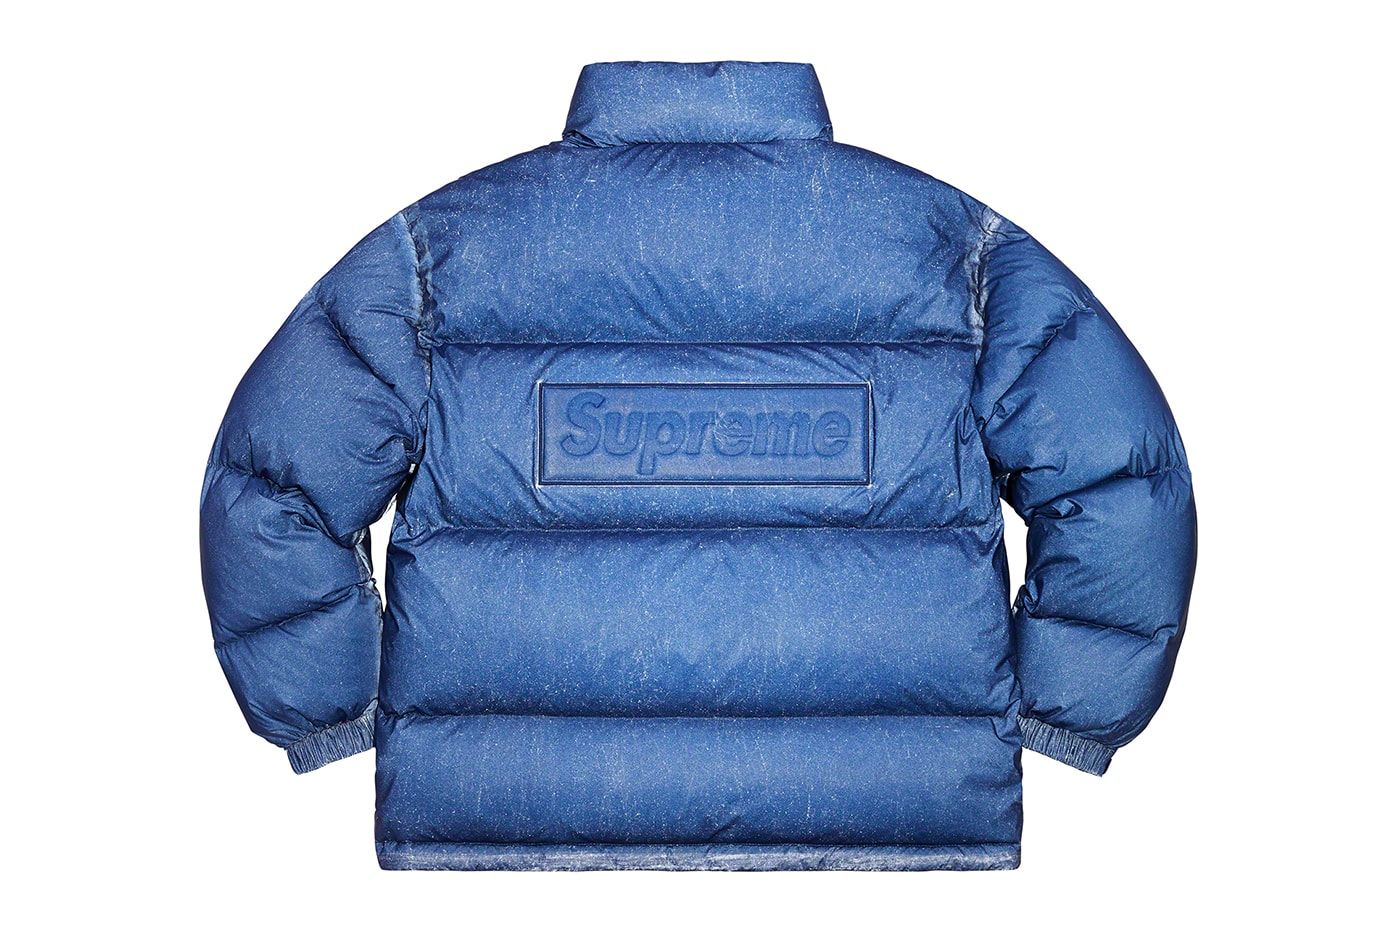 Supreme Fall/Winter 2020 Jackets Toshio Saeki Refrigiwear Fox Racing Vanson Piet Mondrian